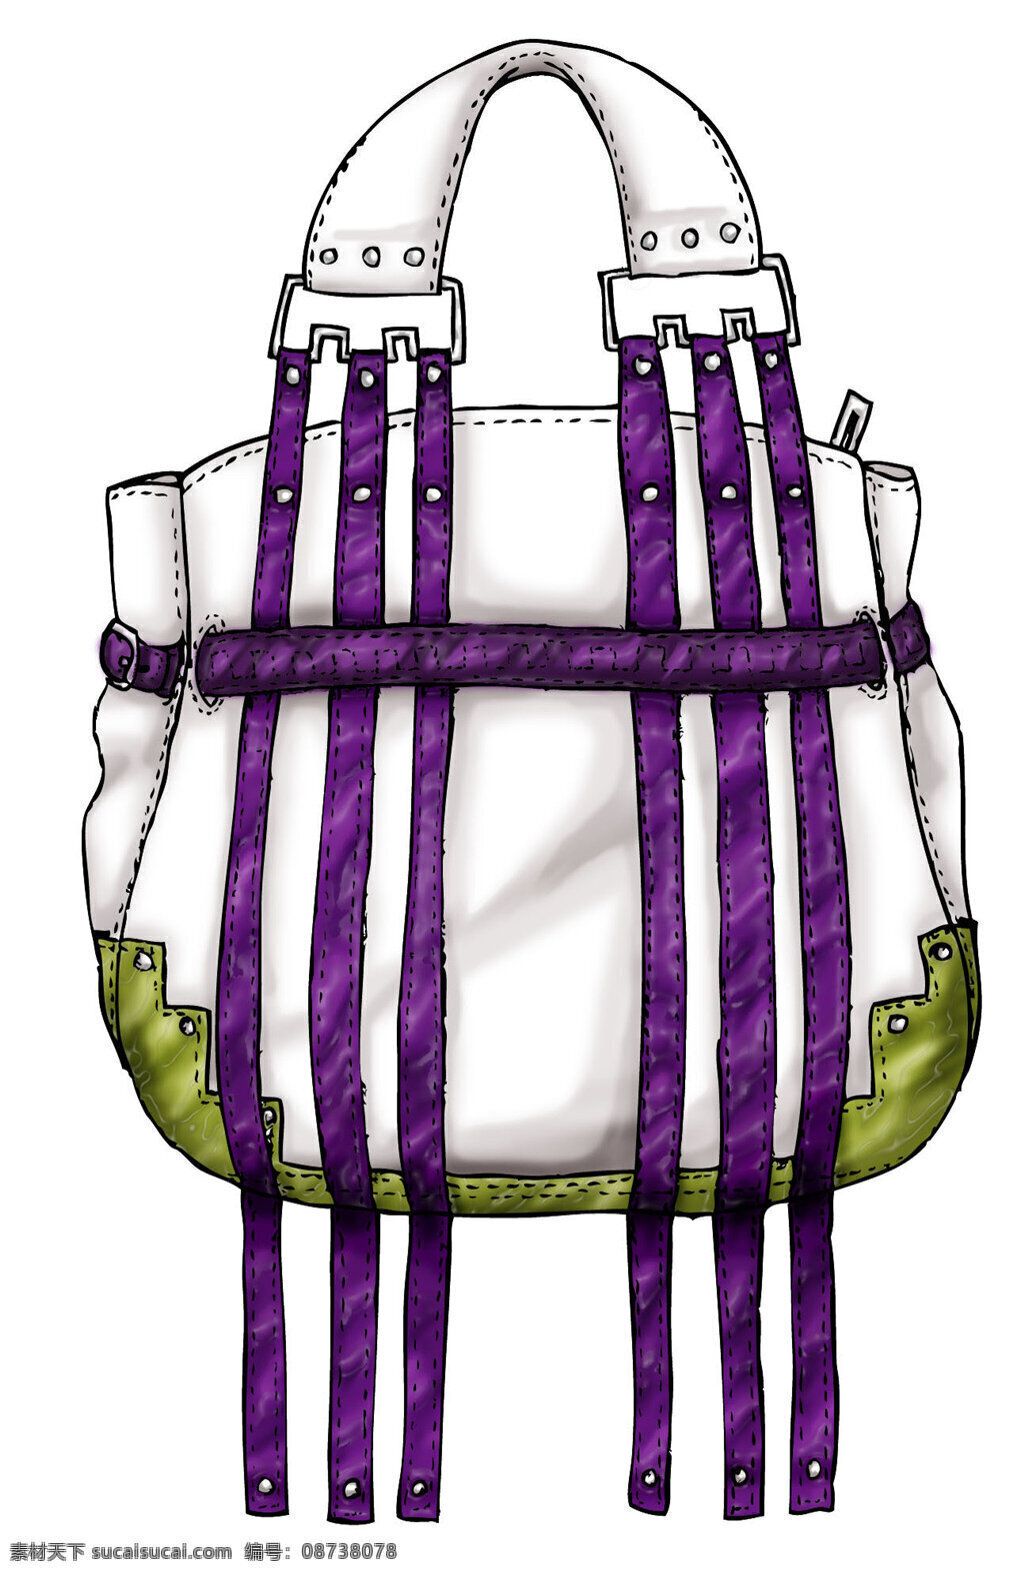 紫色 丝带 手提包 设计图 包包 钱包 女包 箱包 包包设计图 时尚女包 背包 双肩包 书包 男装 皮包 单肩包 手提包效果图 包包图片下载